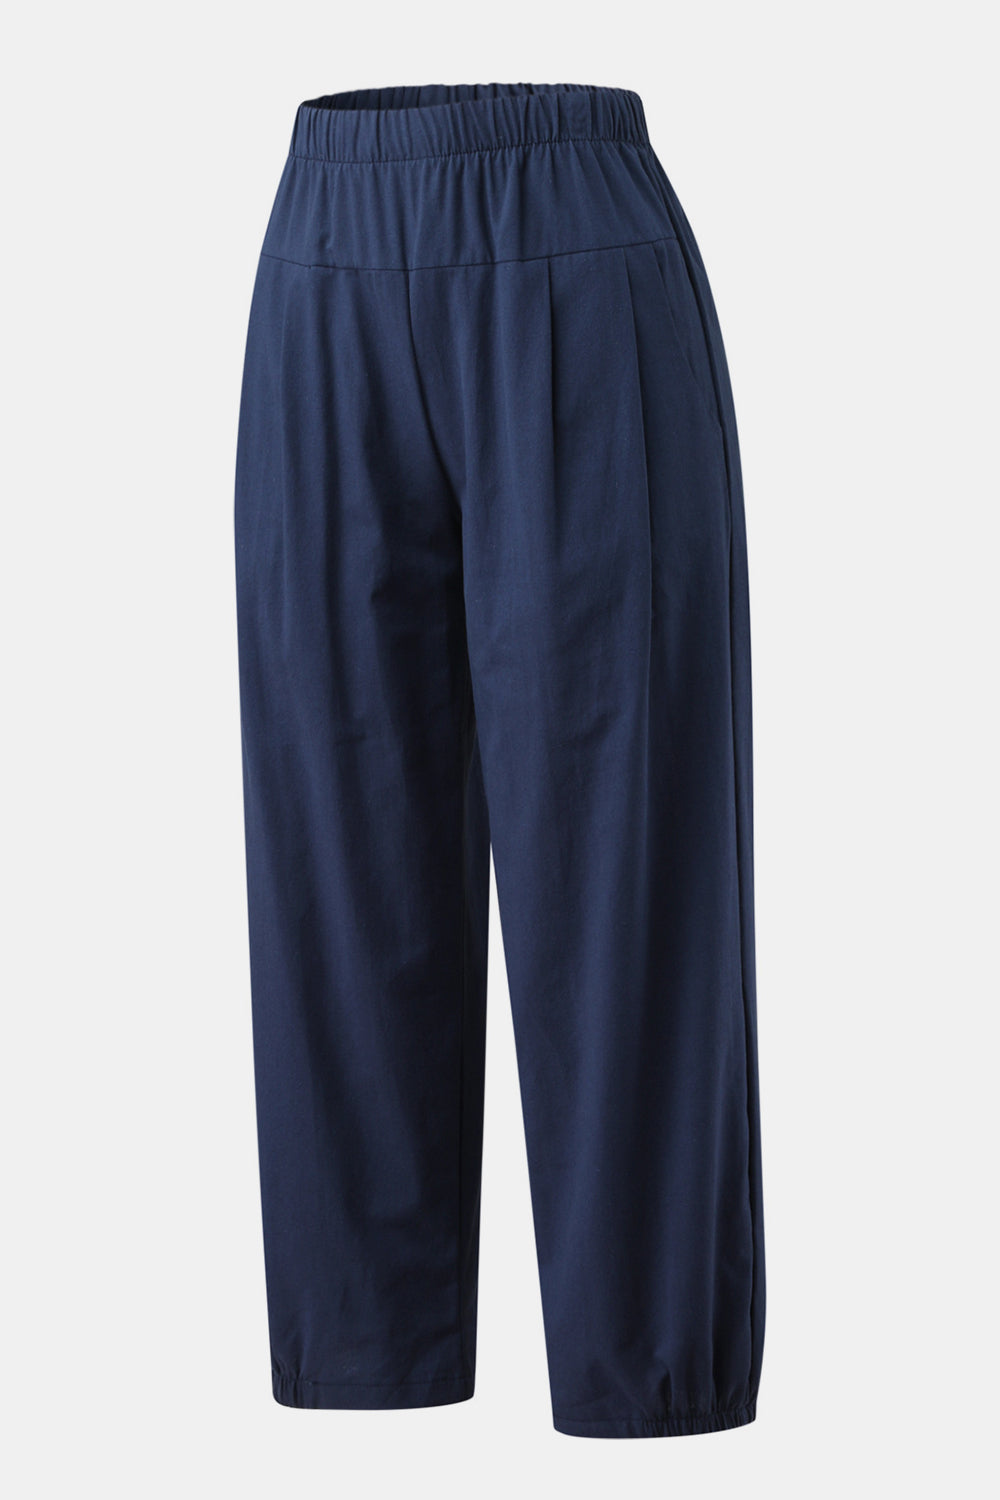 TEEK - Easy Elastic Waist Cropped Pants PANTS TEEK Trend Navy S 